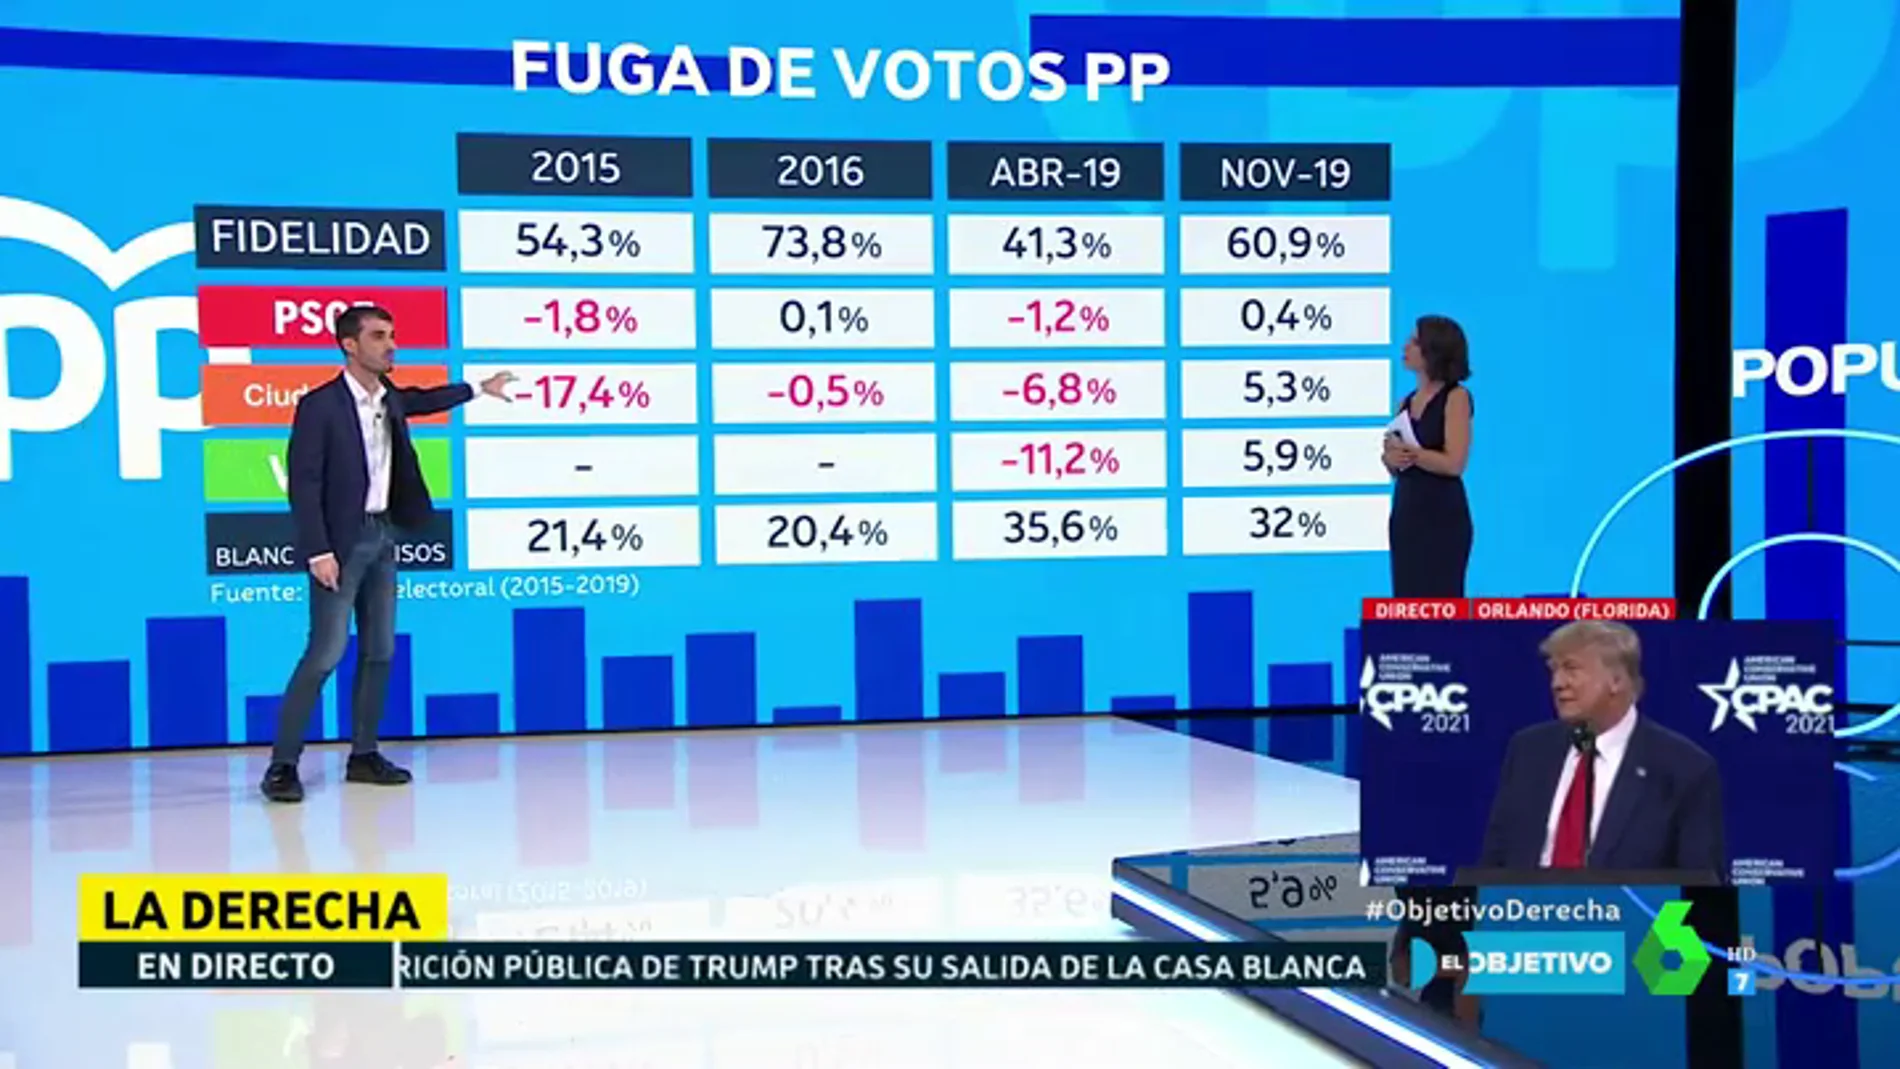 Fuga de votos del PP: el politólogo Pablo Simón analiza los últimos descalabros electorales del partido